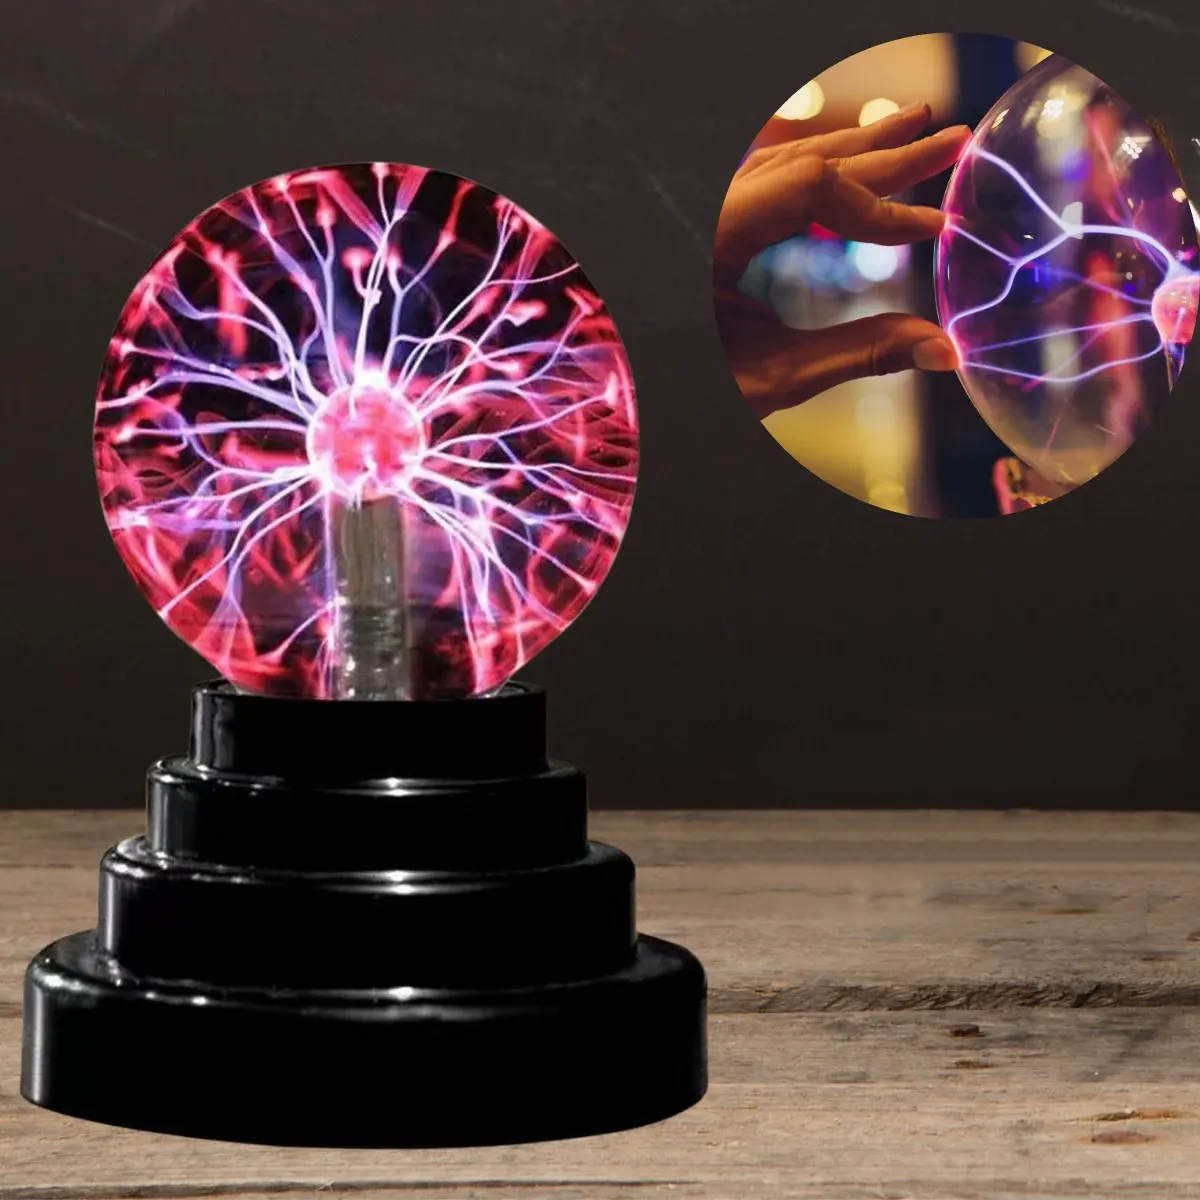 3 inç 220v elektrikli masa lambası sihirli gece lambası plazma topu noel çocuk hediye için bilim sınıfı